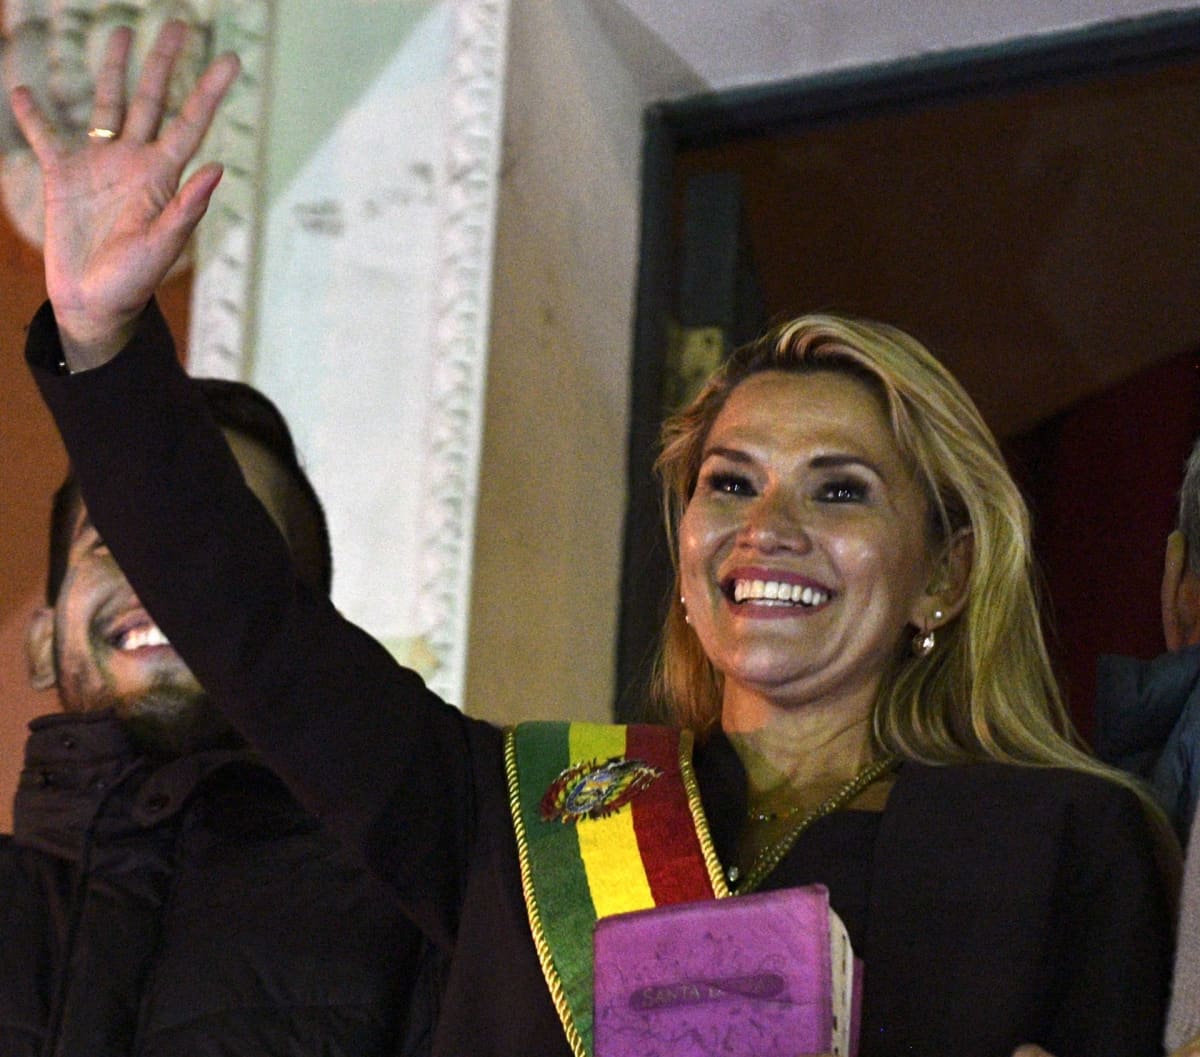 Bolivian presidentiksi julistautunut Jeanine Anez vilkutteli yleisölle Palacio Quemadon, Bolivian presidentin linnan parvekkeelta julistautumisen jälkeen.